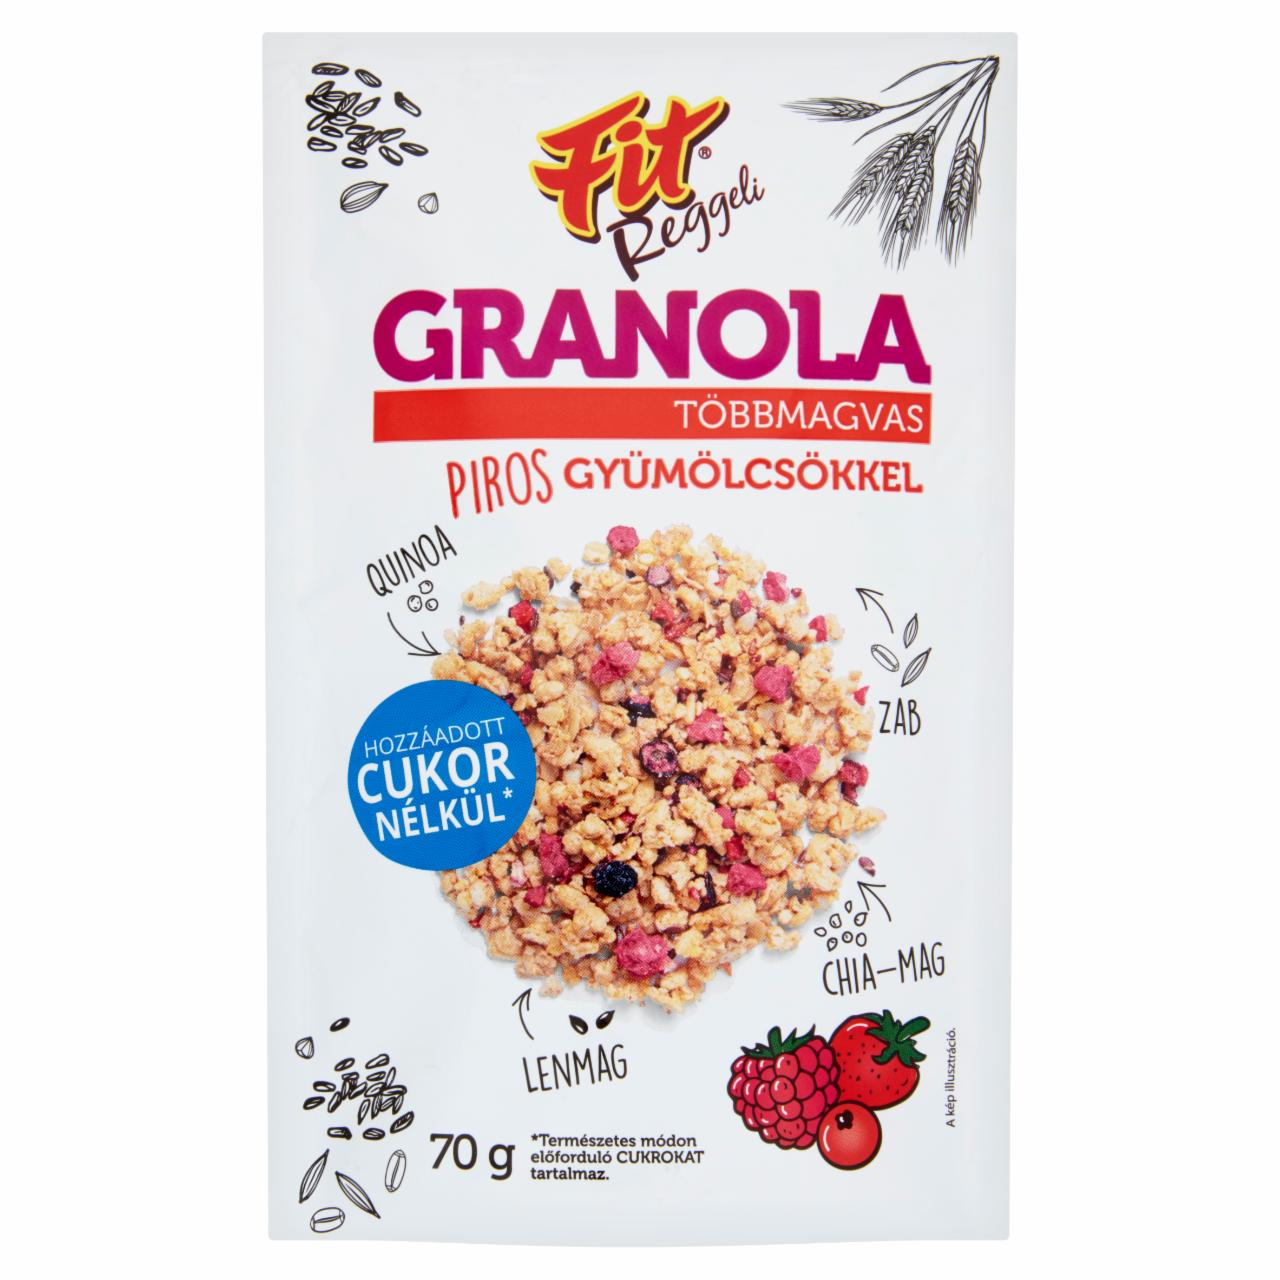 Képek - Fit többmagvas granola piros gyümölcsökkel 70 g